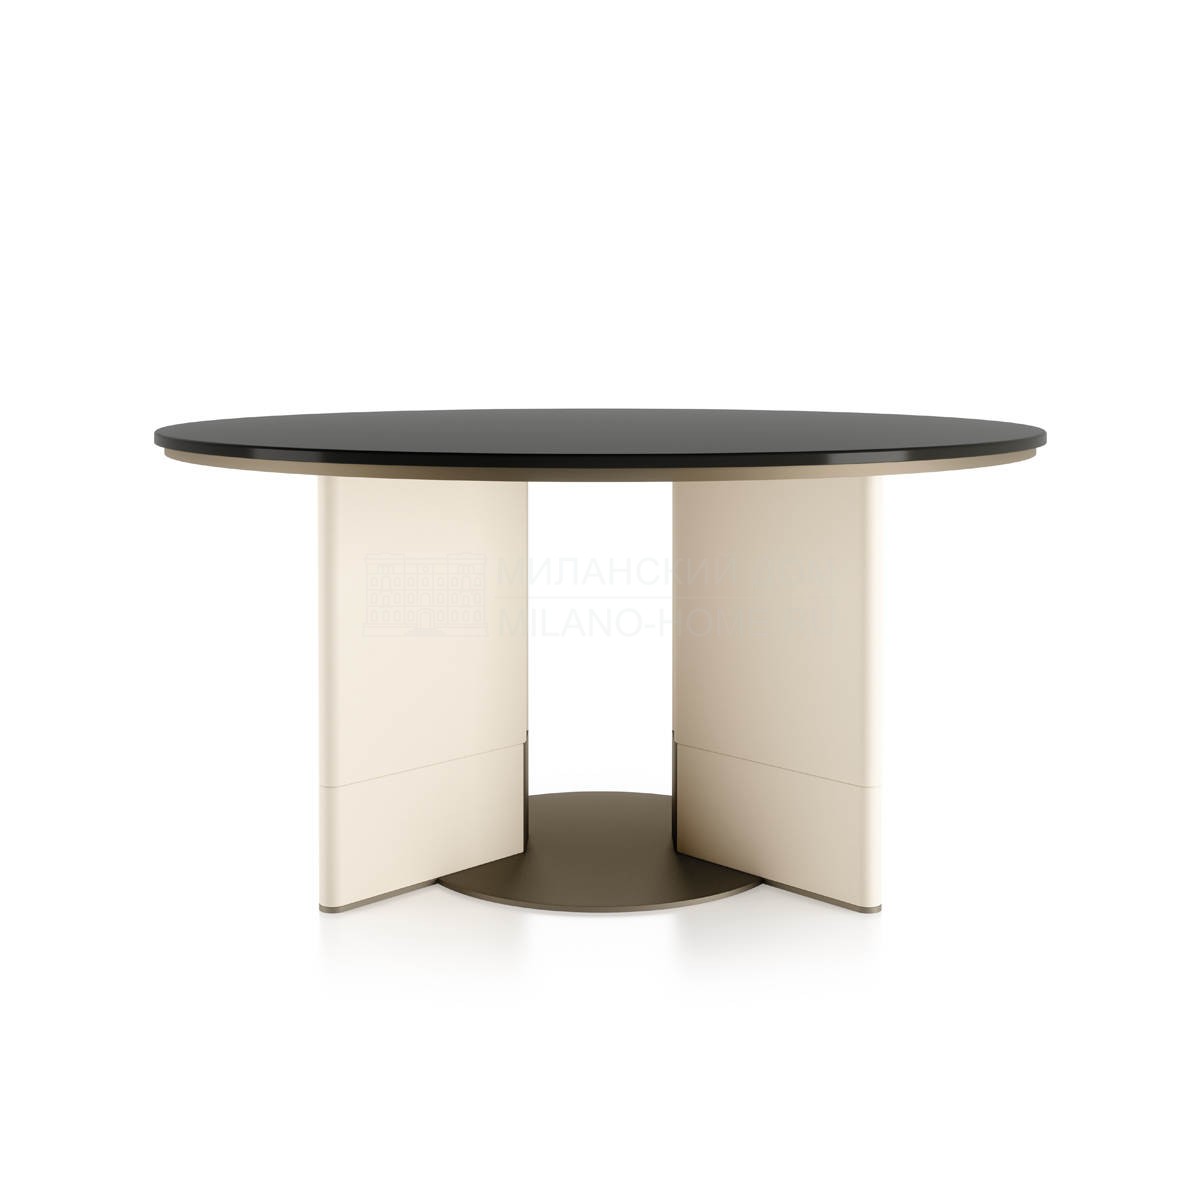 Обеденный стол Zero round table из Италии фабрики TURRI